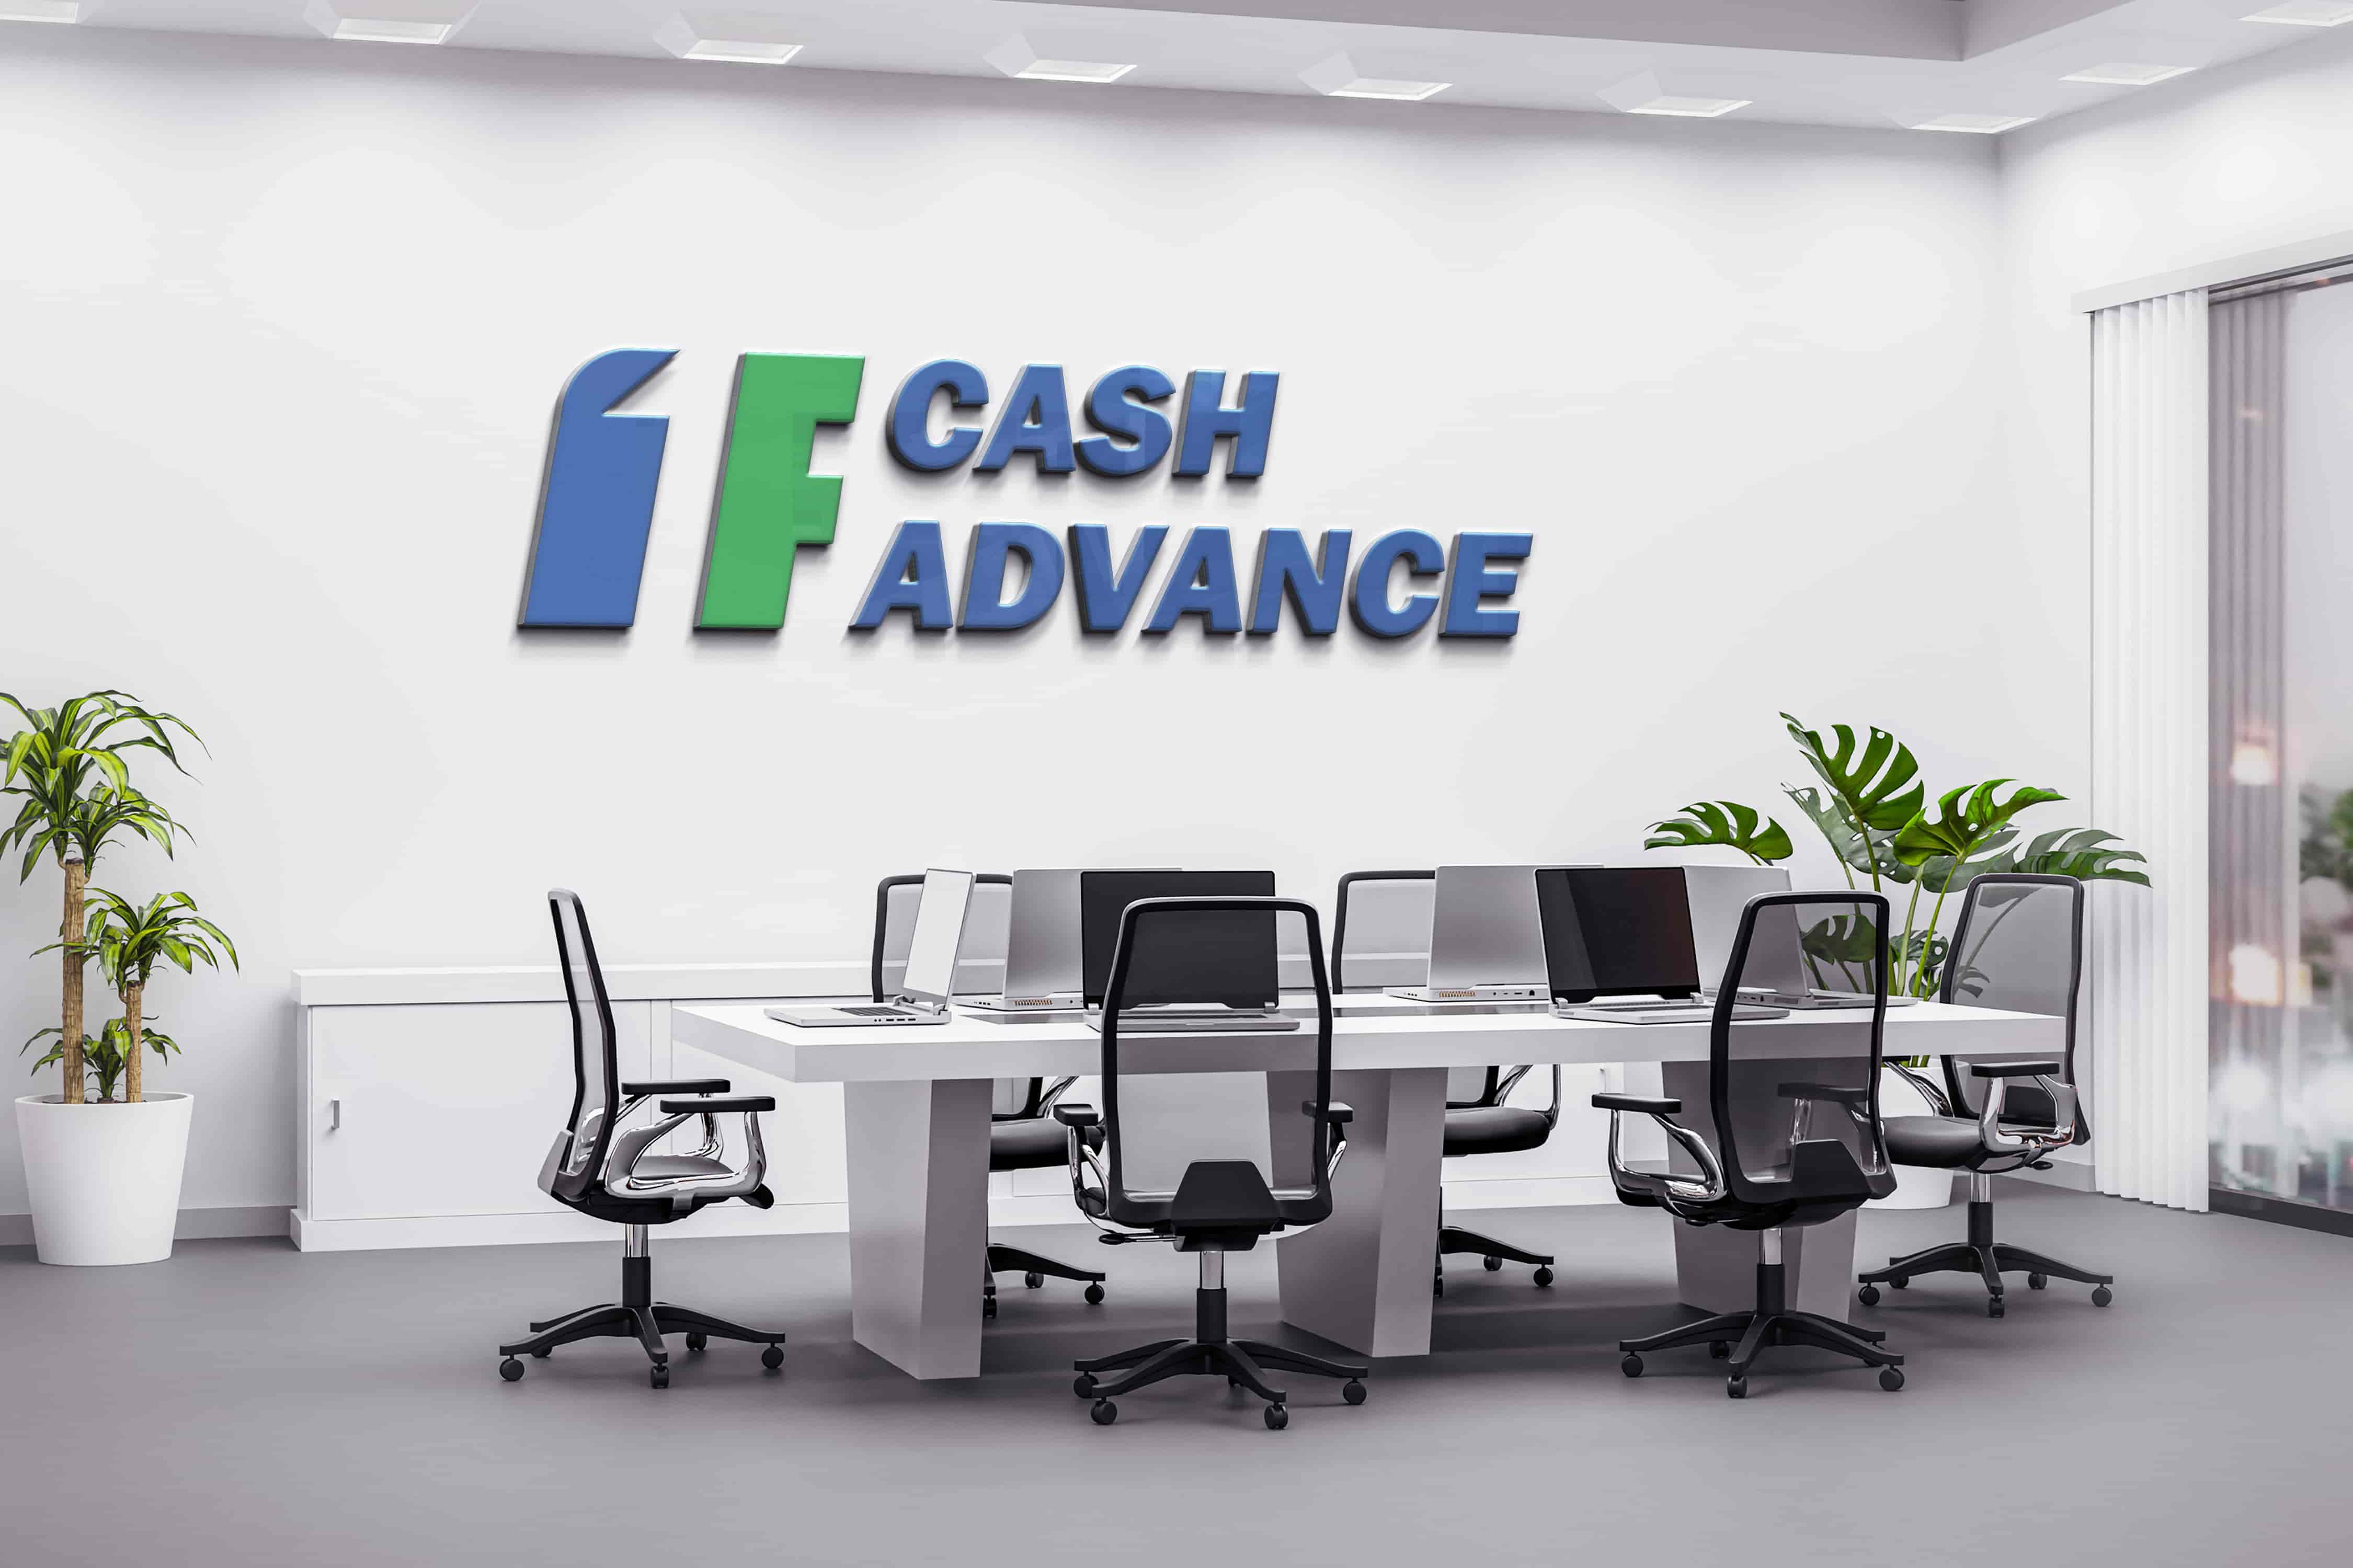 Cash advance in Mobile, AL